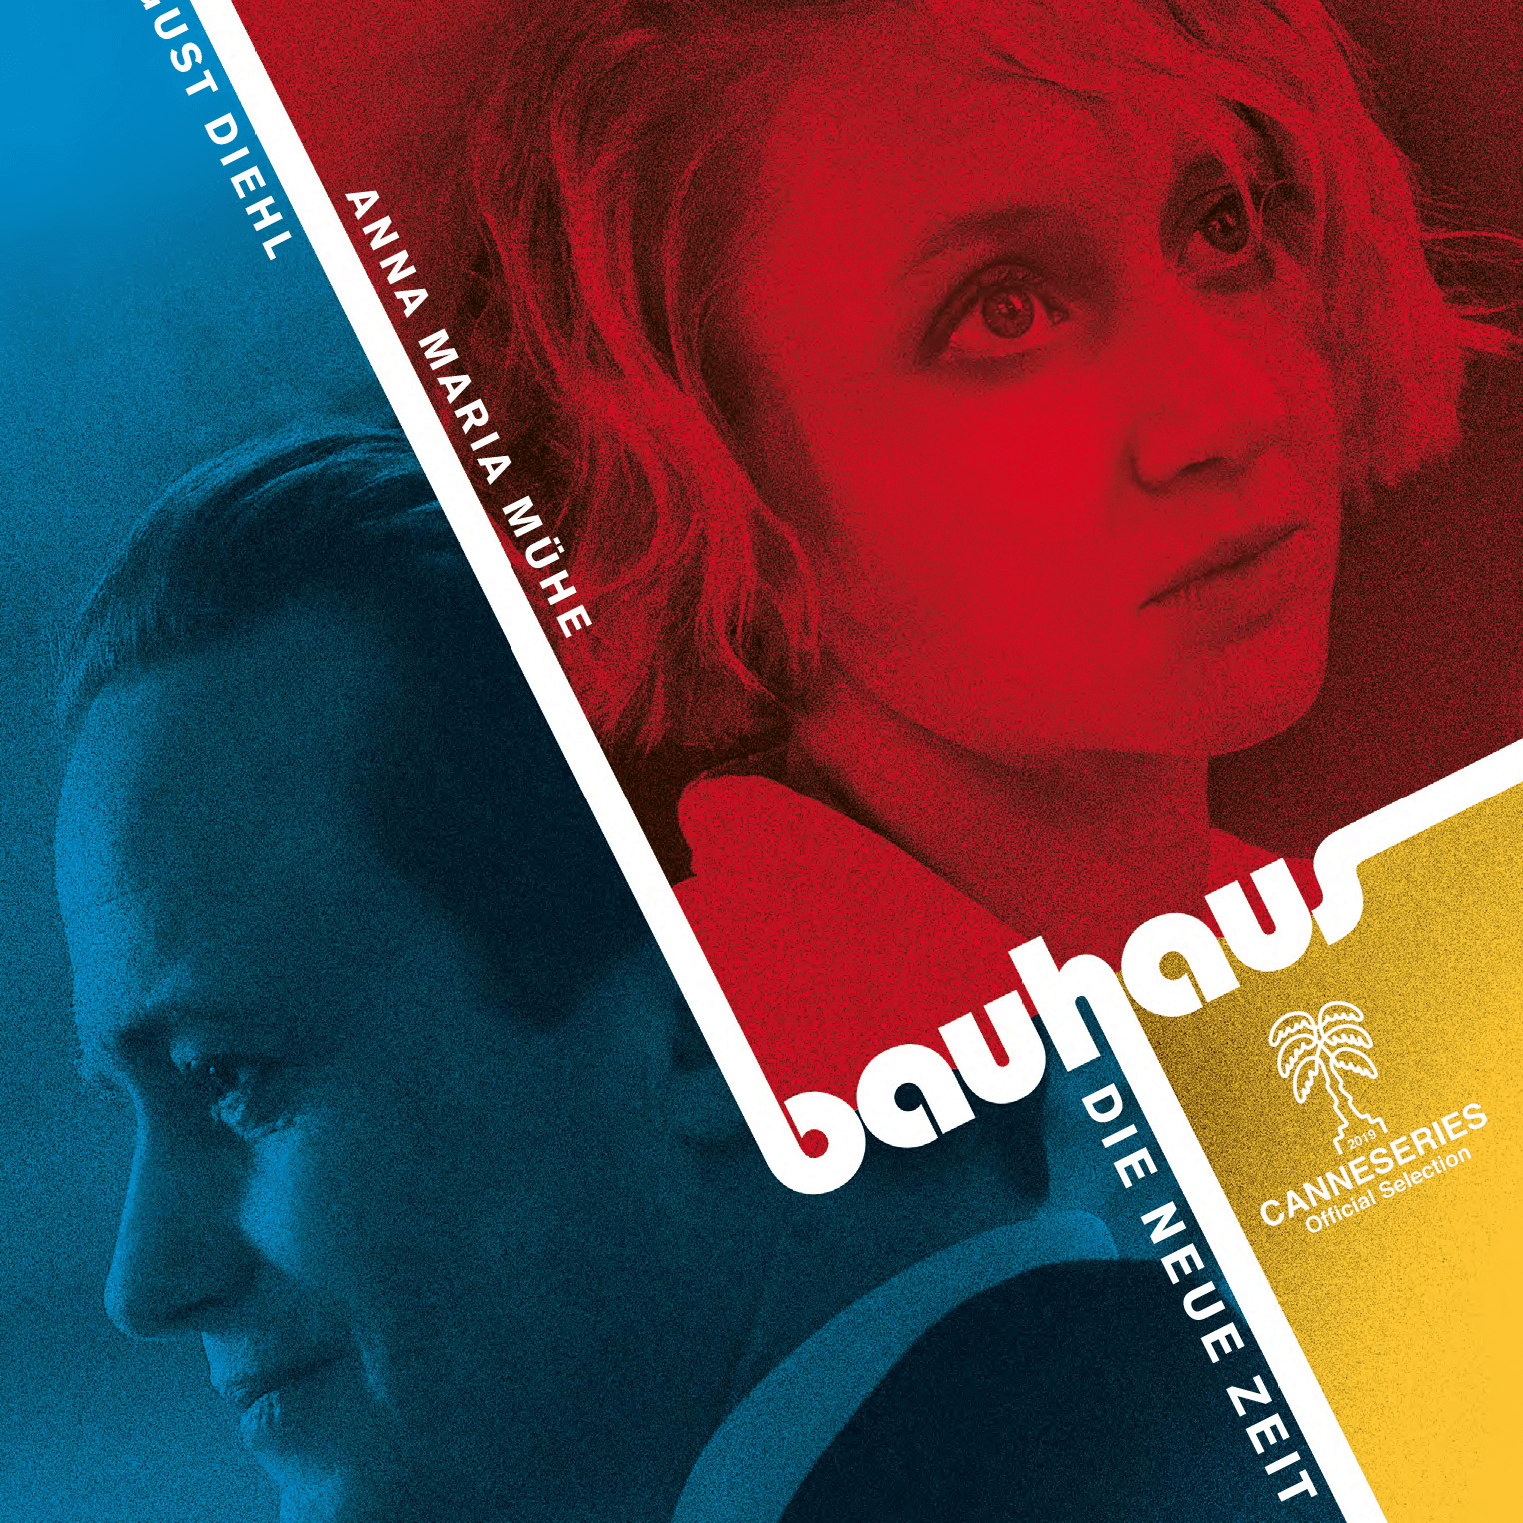 Bauhaus - Yeni Bir Dönem resmi